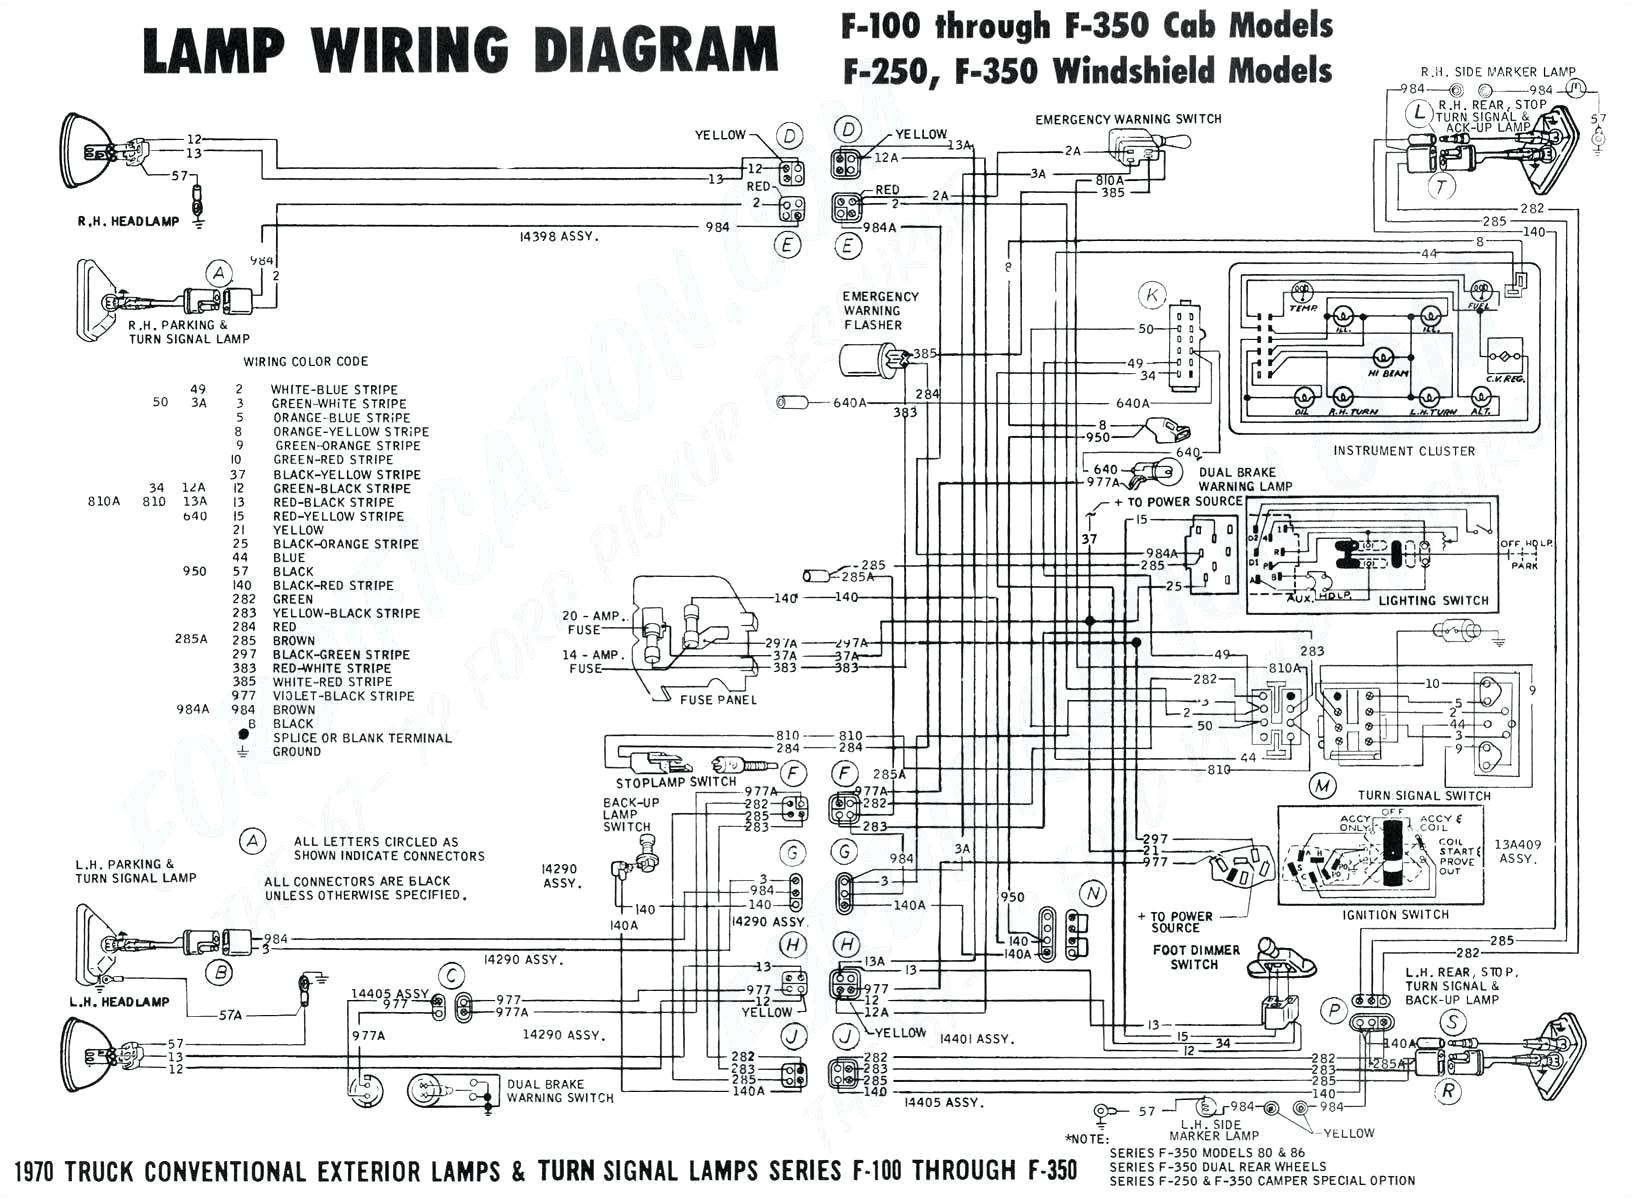 chrysler grand voyager wiring diagram wiring diagram blog wiring diagram chrysler grand voyager chrysler voyager 2002